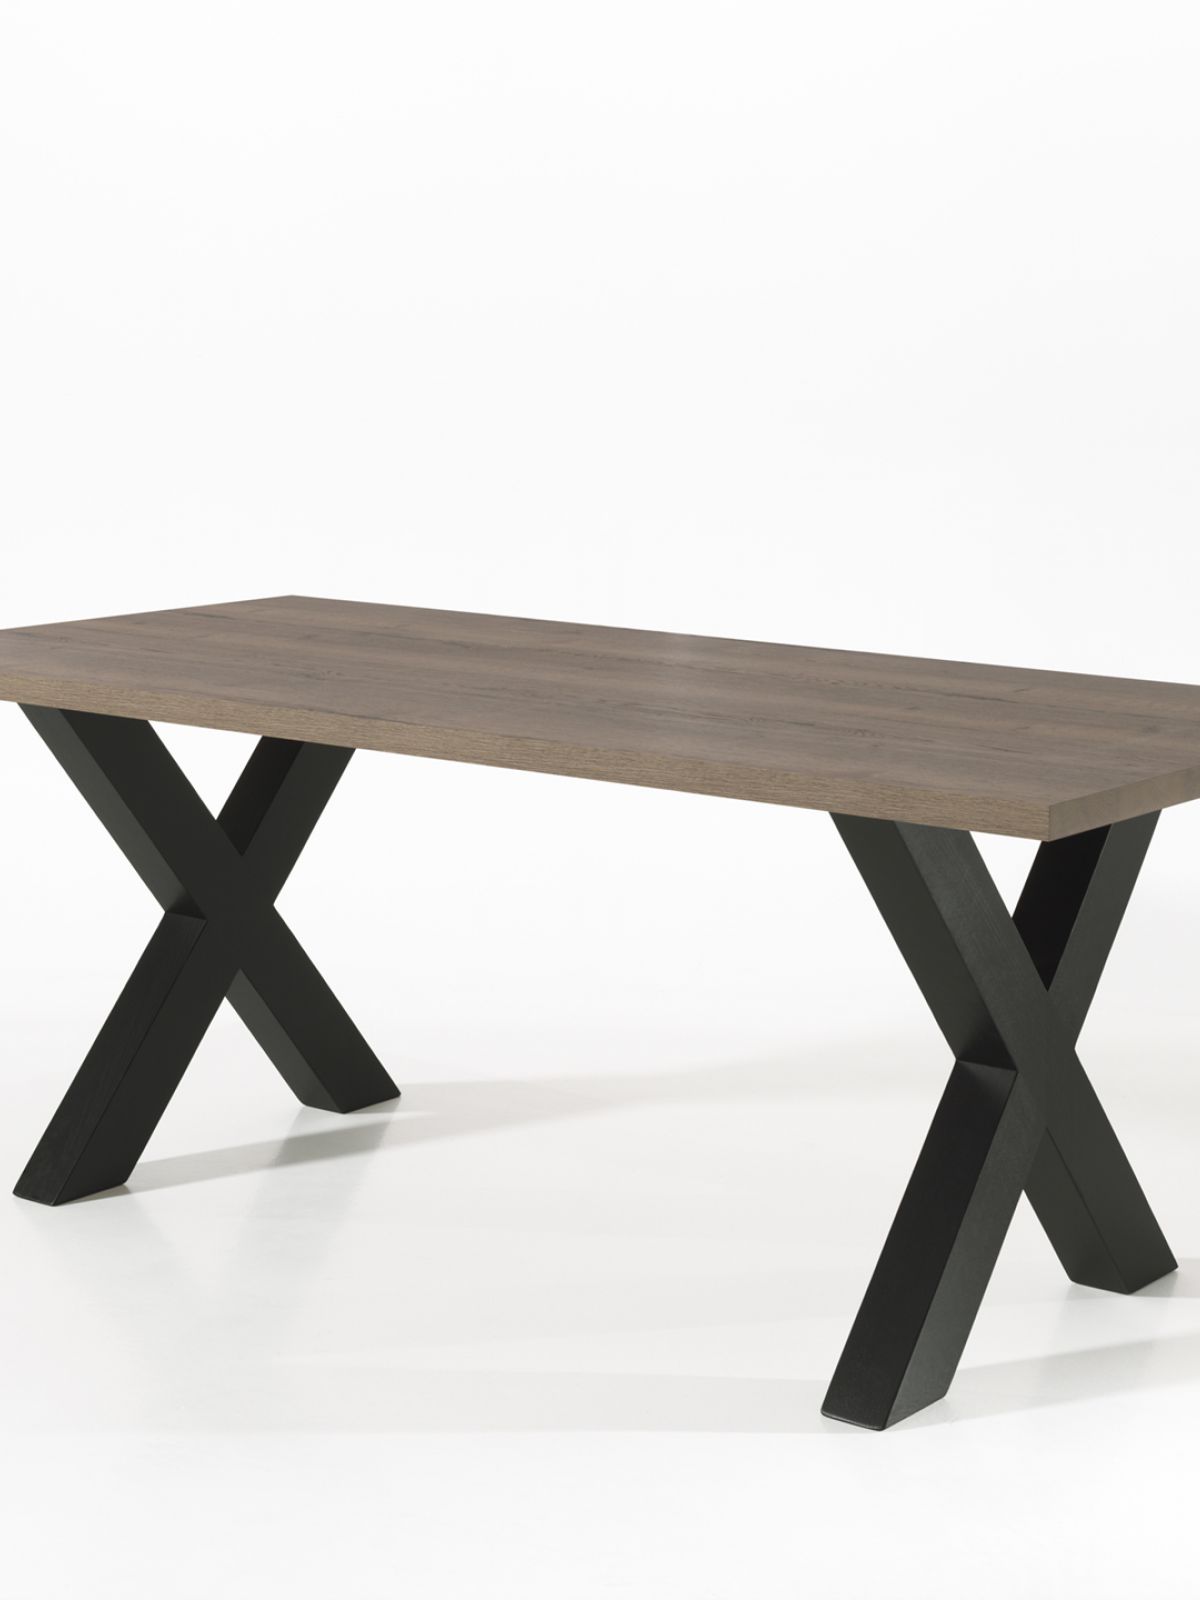 Table rectangulaire fixe avec X-pied 2m